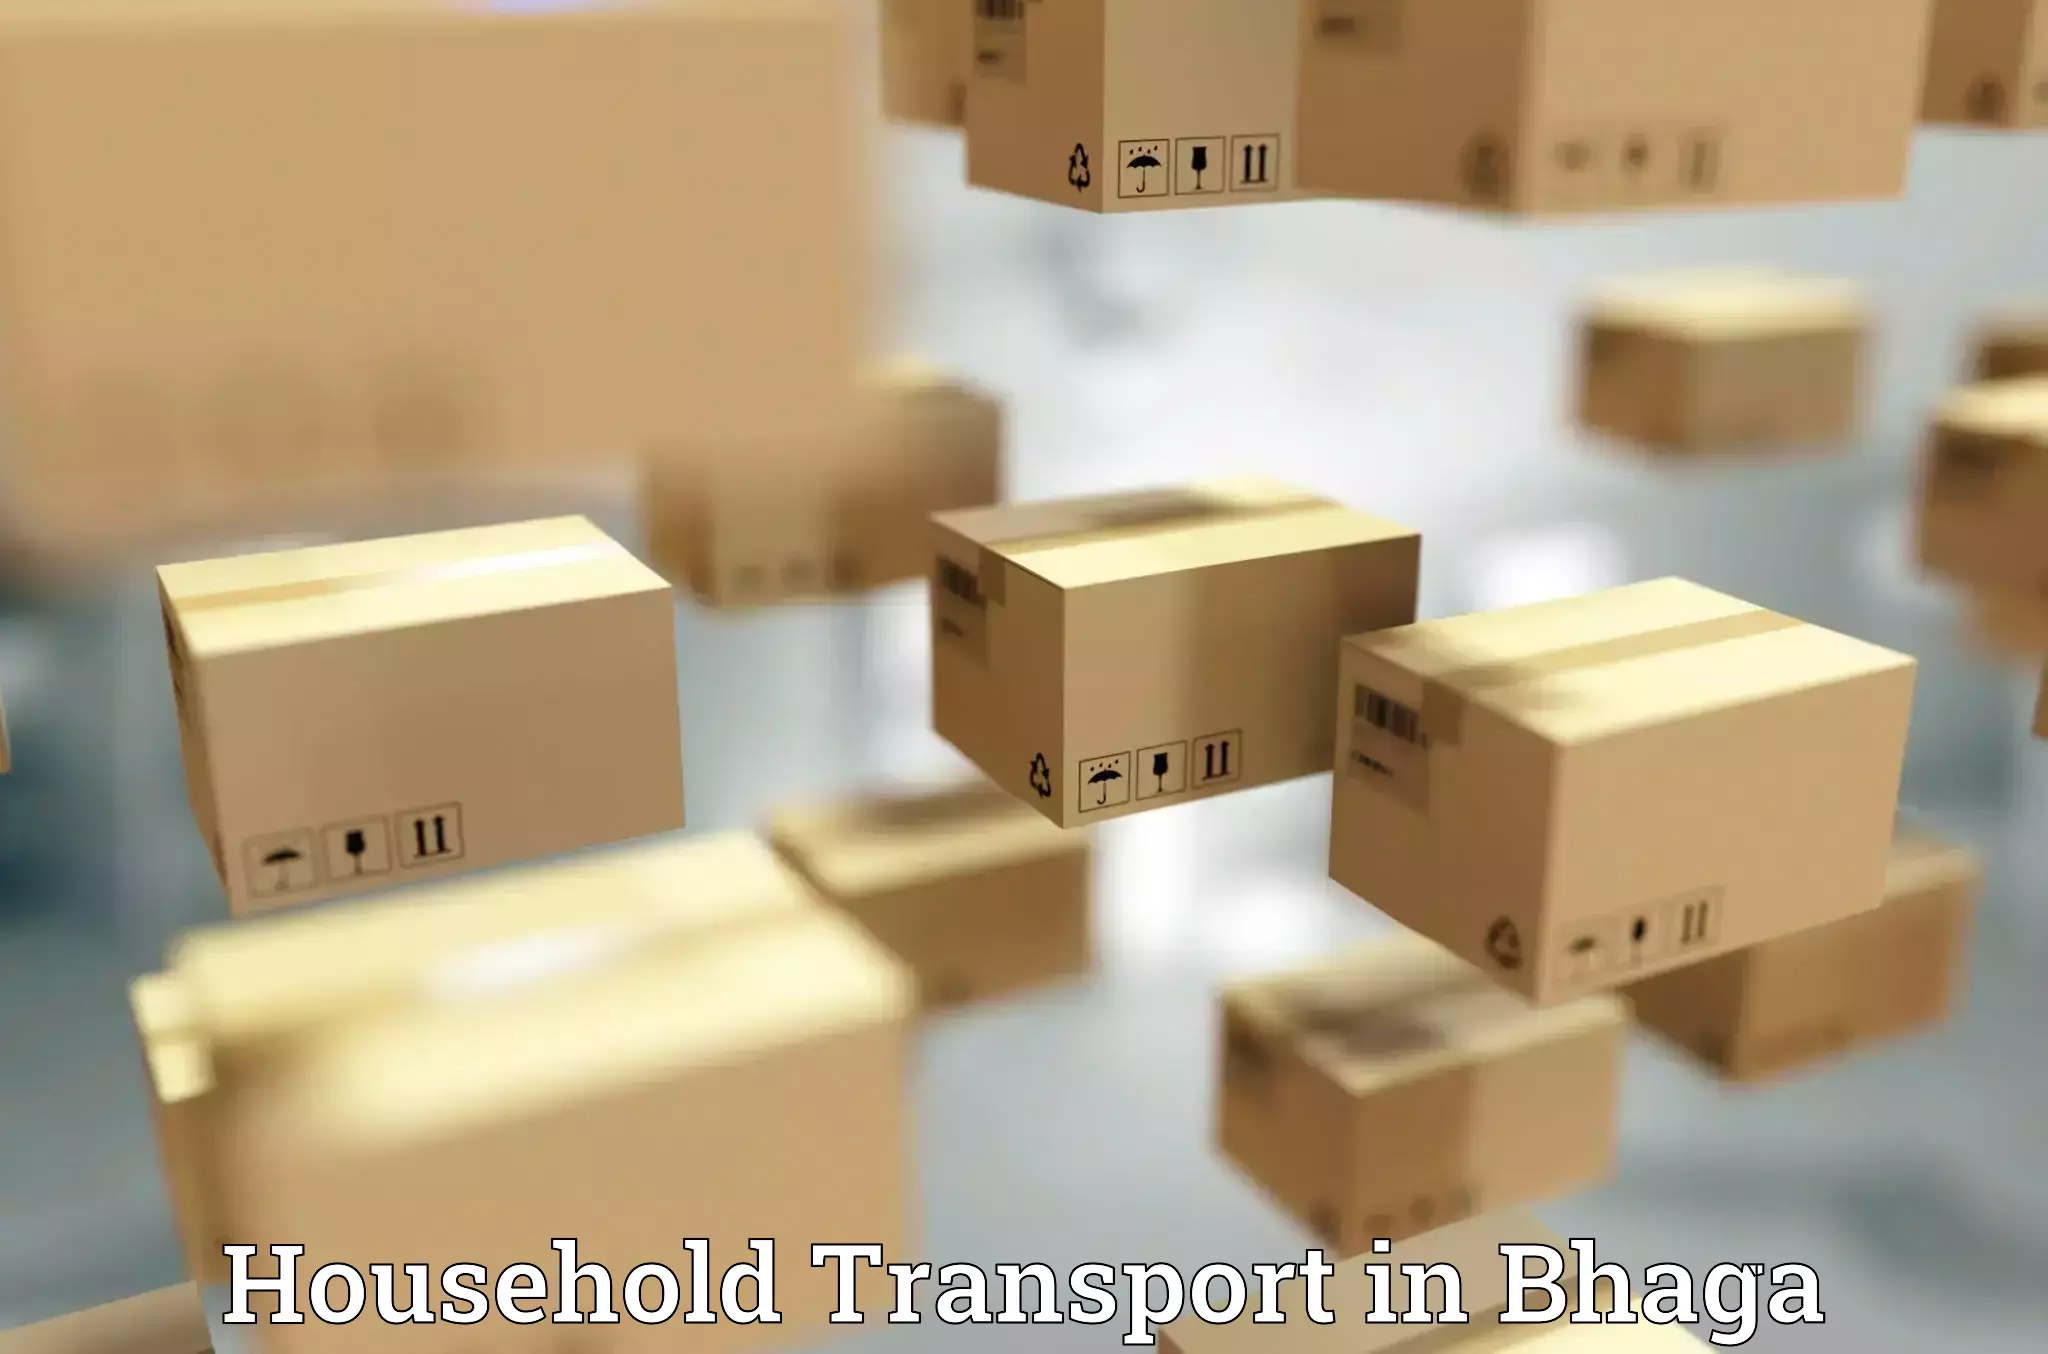 Professional goods transport in Bhaga